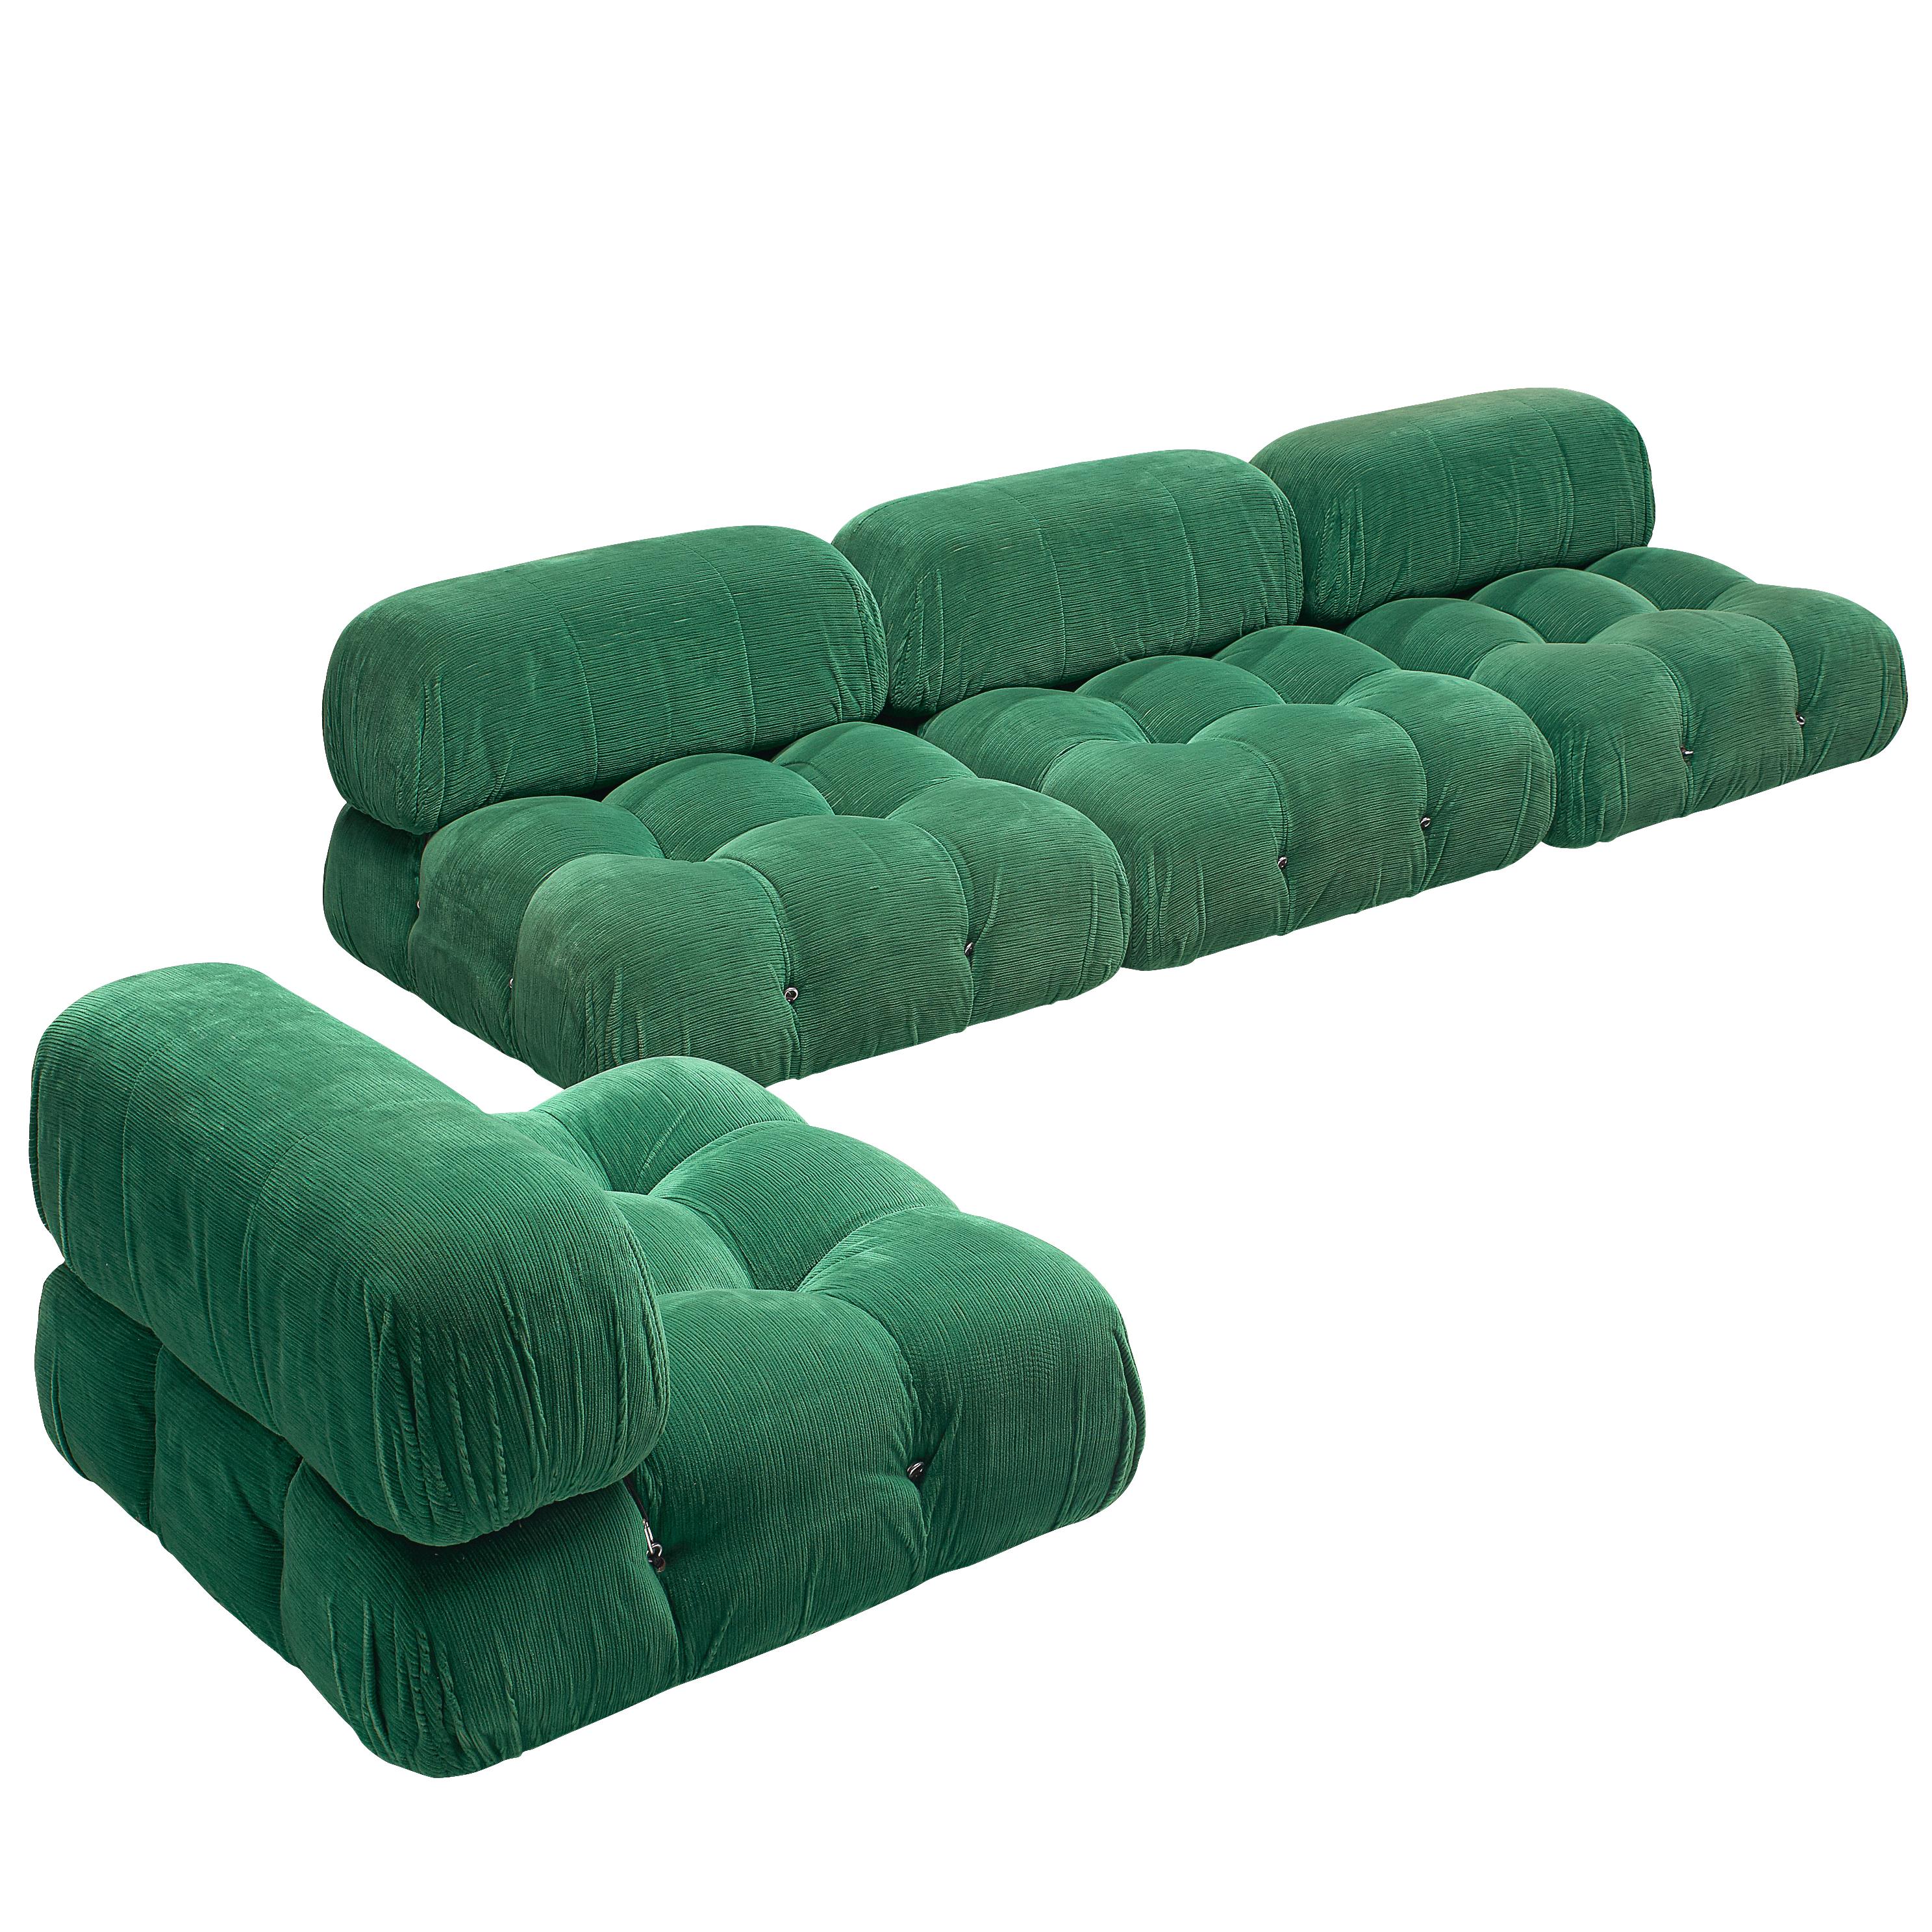 Mario Bellini Modular 'Camaleonda' Sofa in Green Fabric